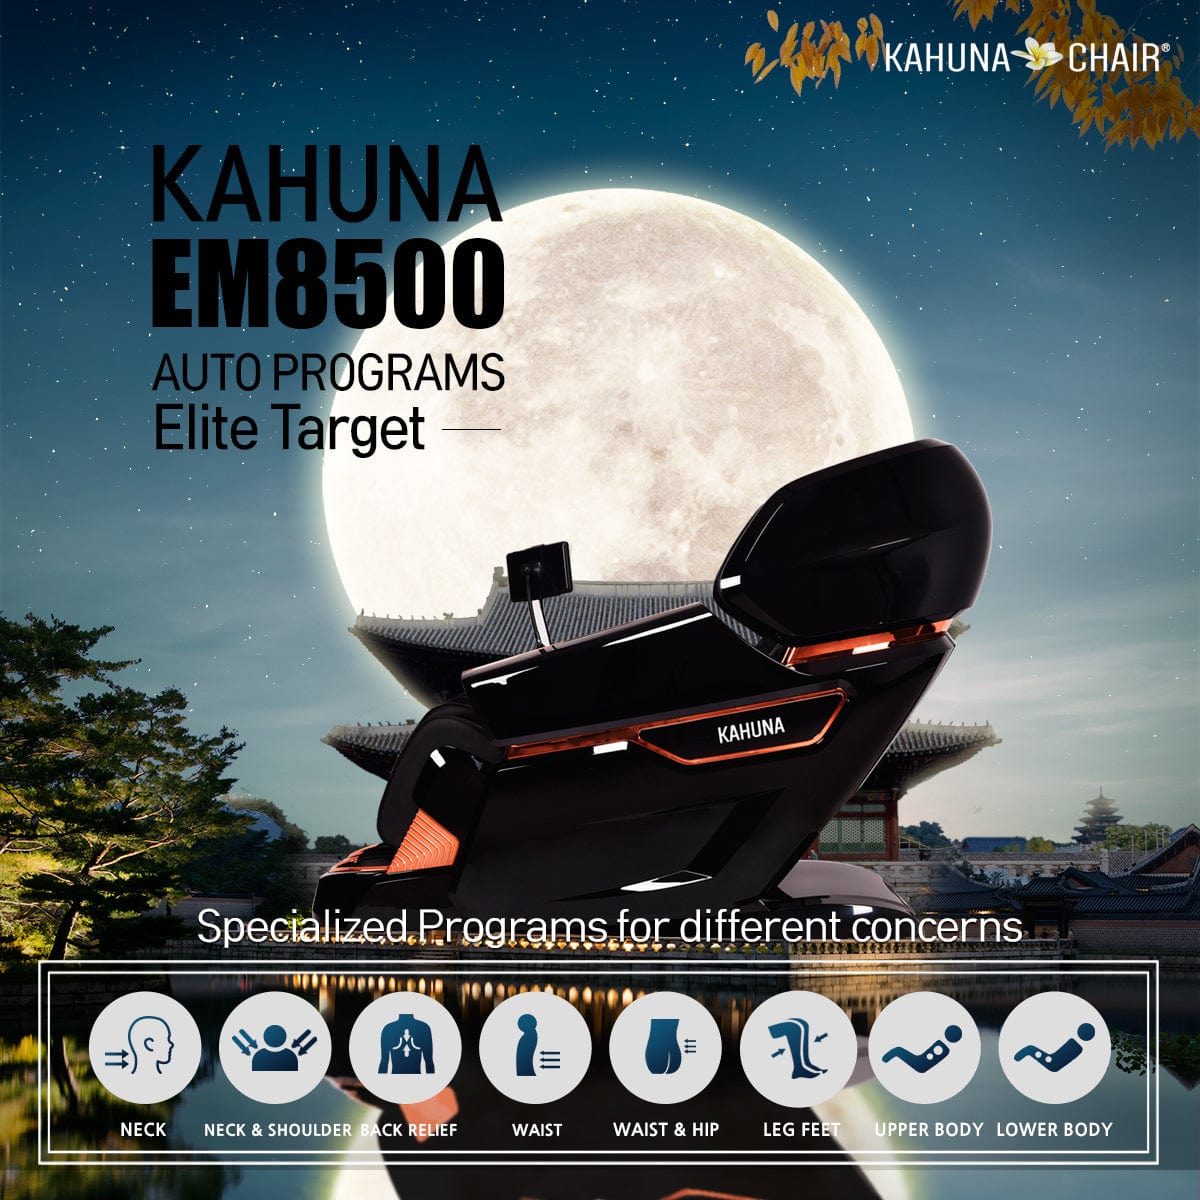 Kahuna Chair – EM 8500 [Brown] - Massage Chair